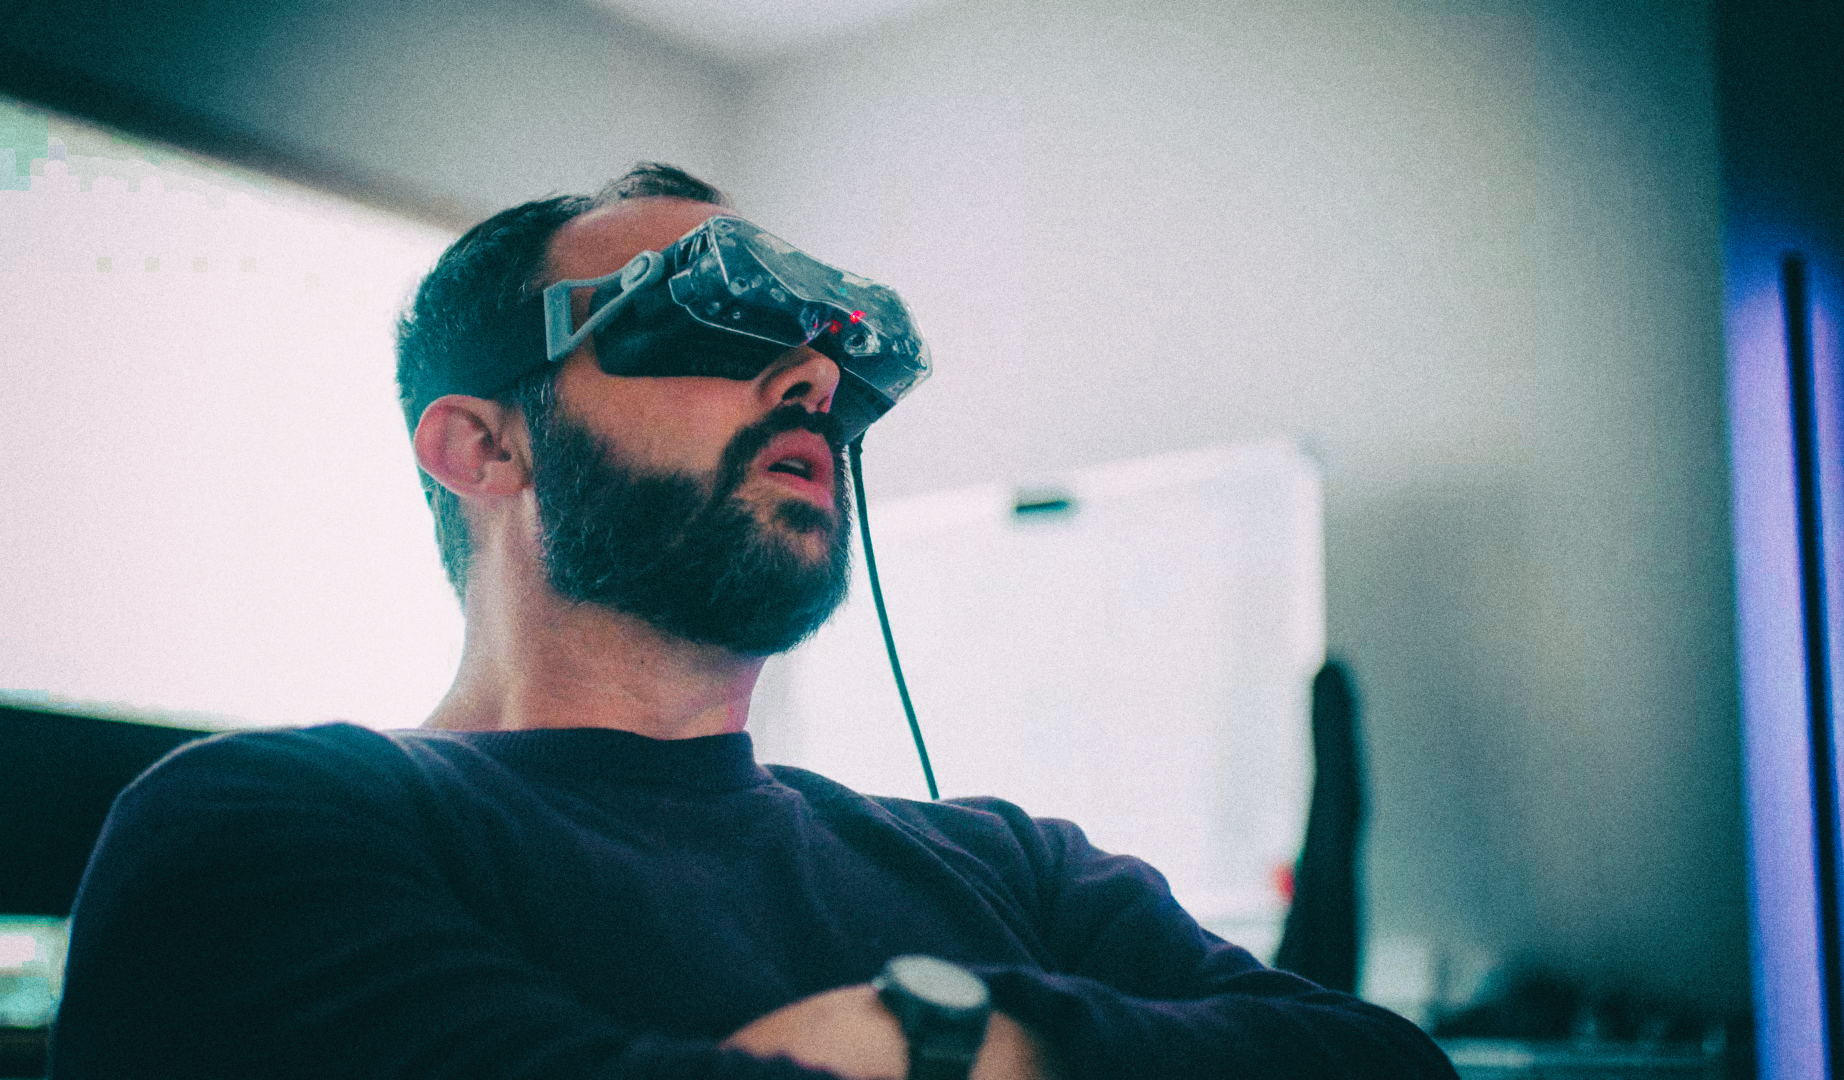 Представлена самая маленькая в мире гарнитура виртуальной реальности